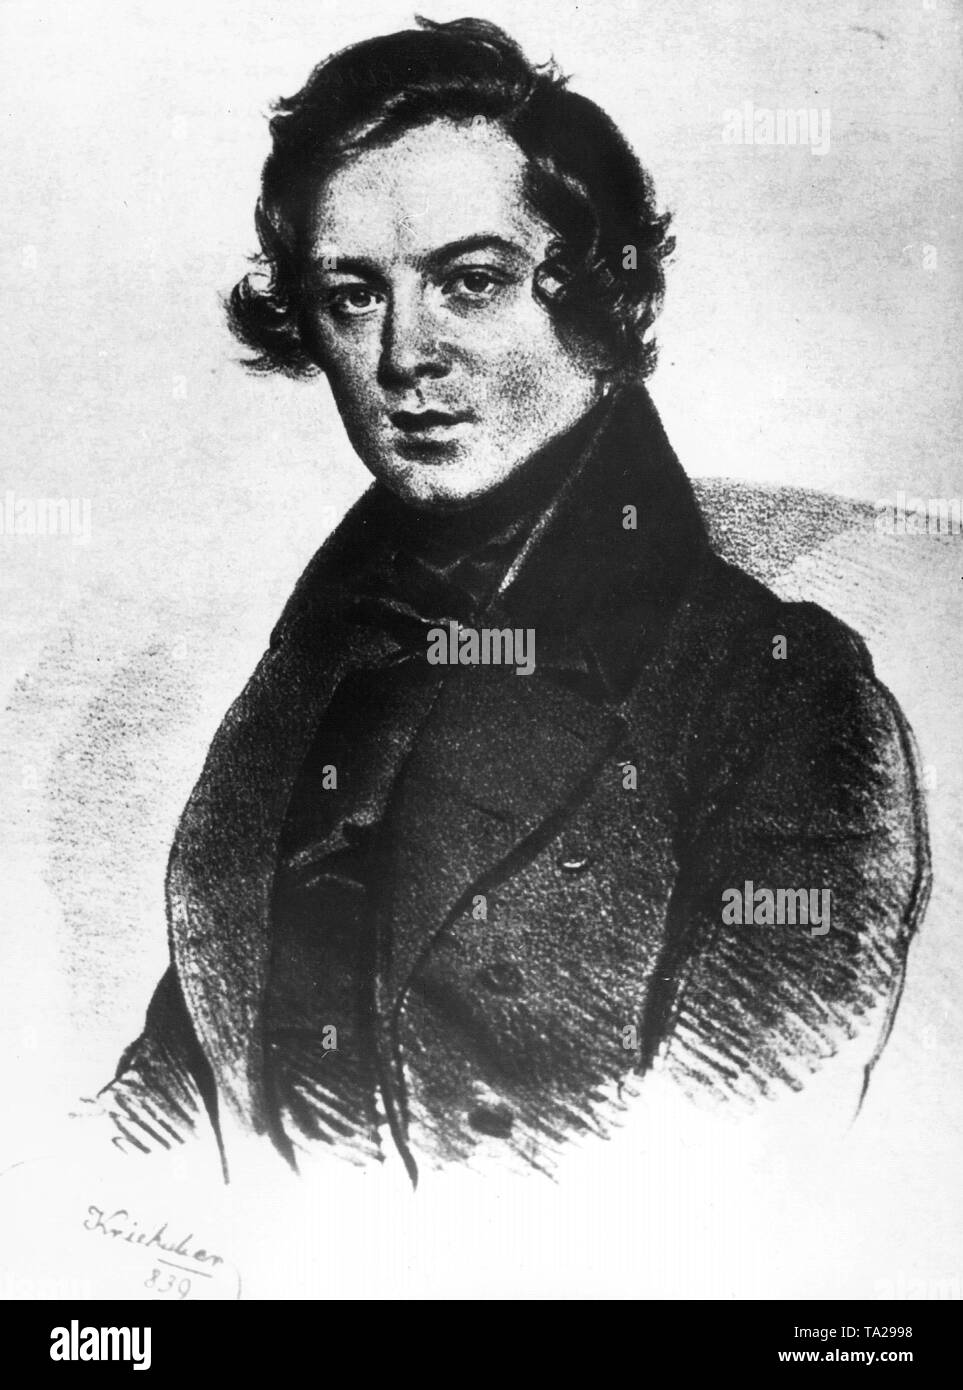 Deutschen Komponisten Robert Schumann (1810-1956). Undatiertes Bild. Stockfoto